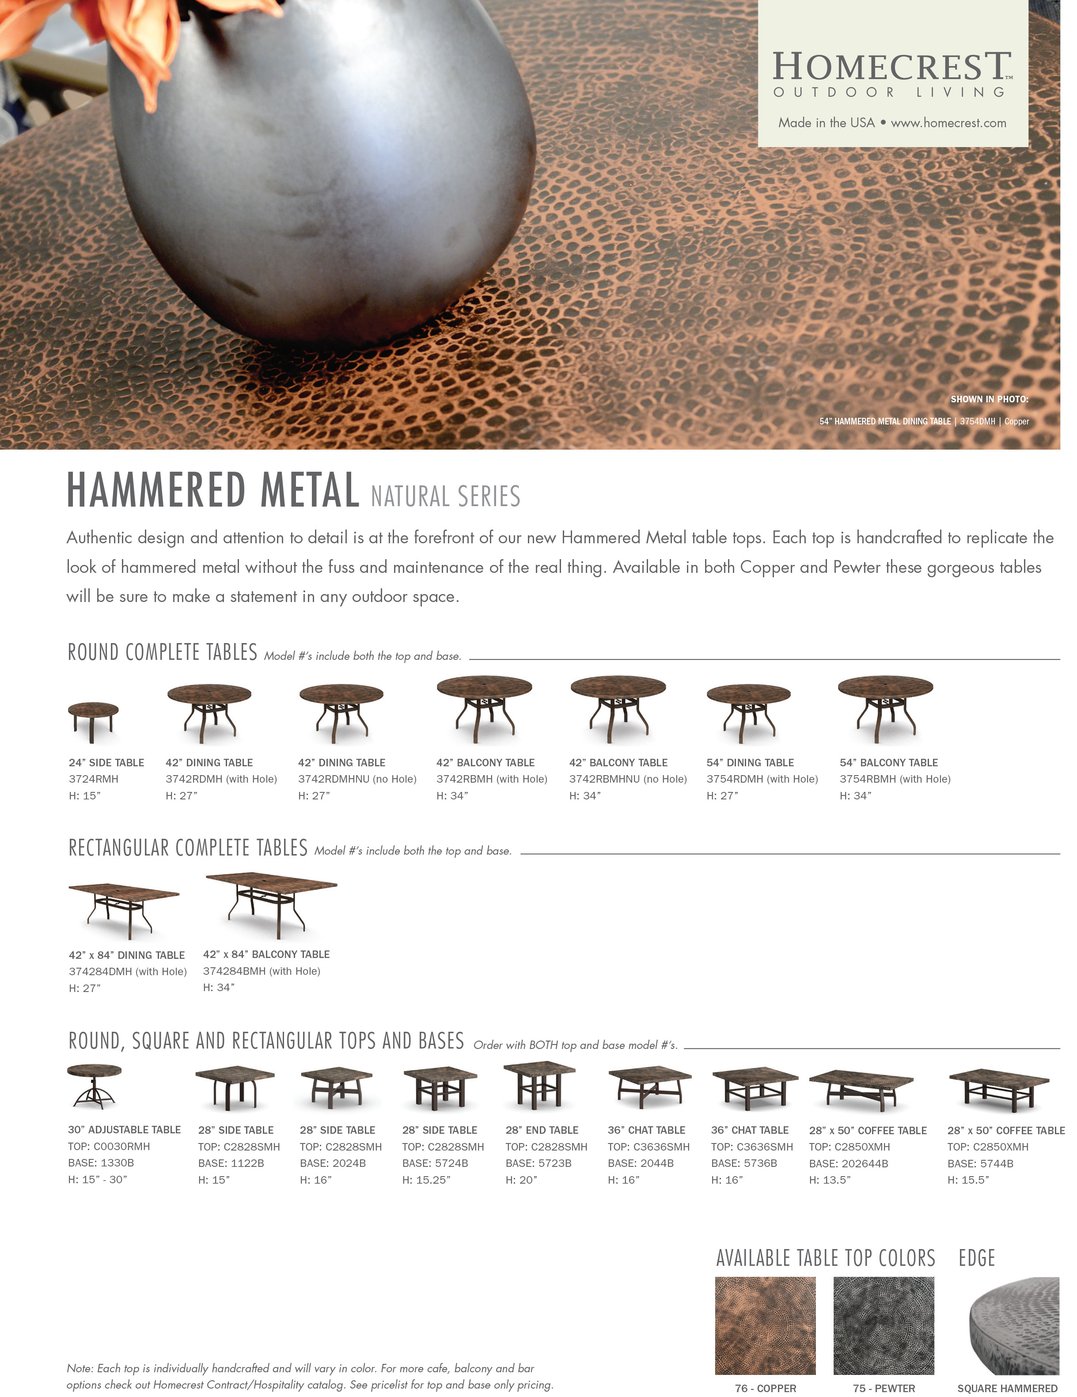 Homecrest-Tables-Hammered-Metal.jpg